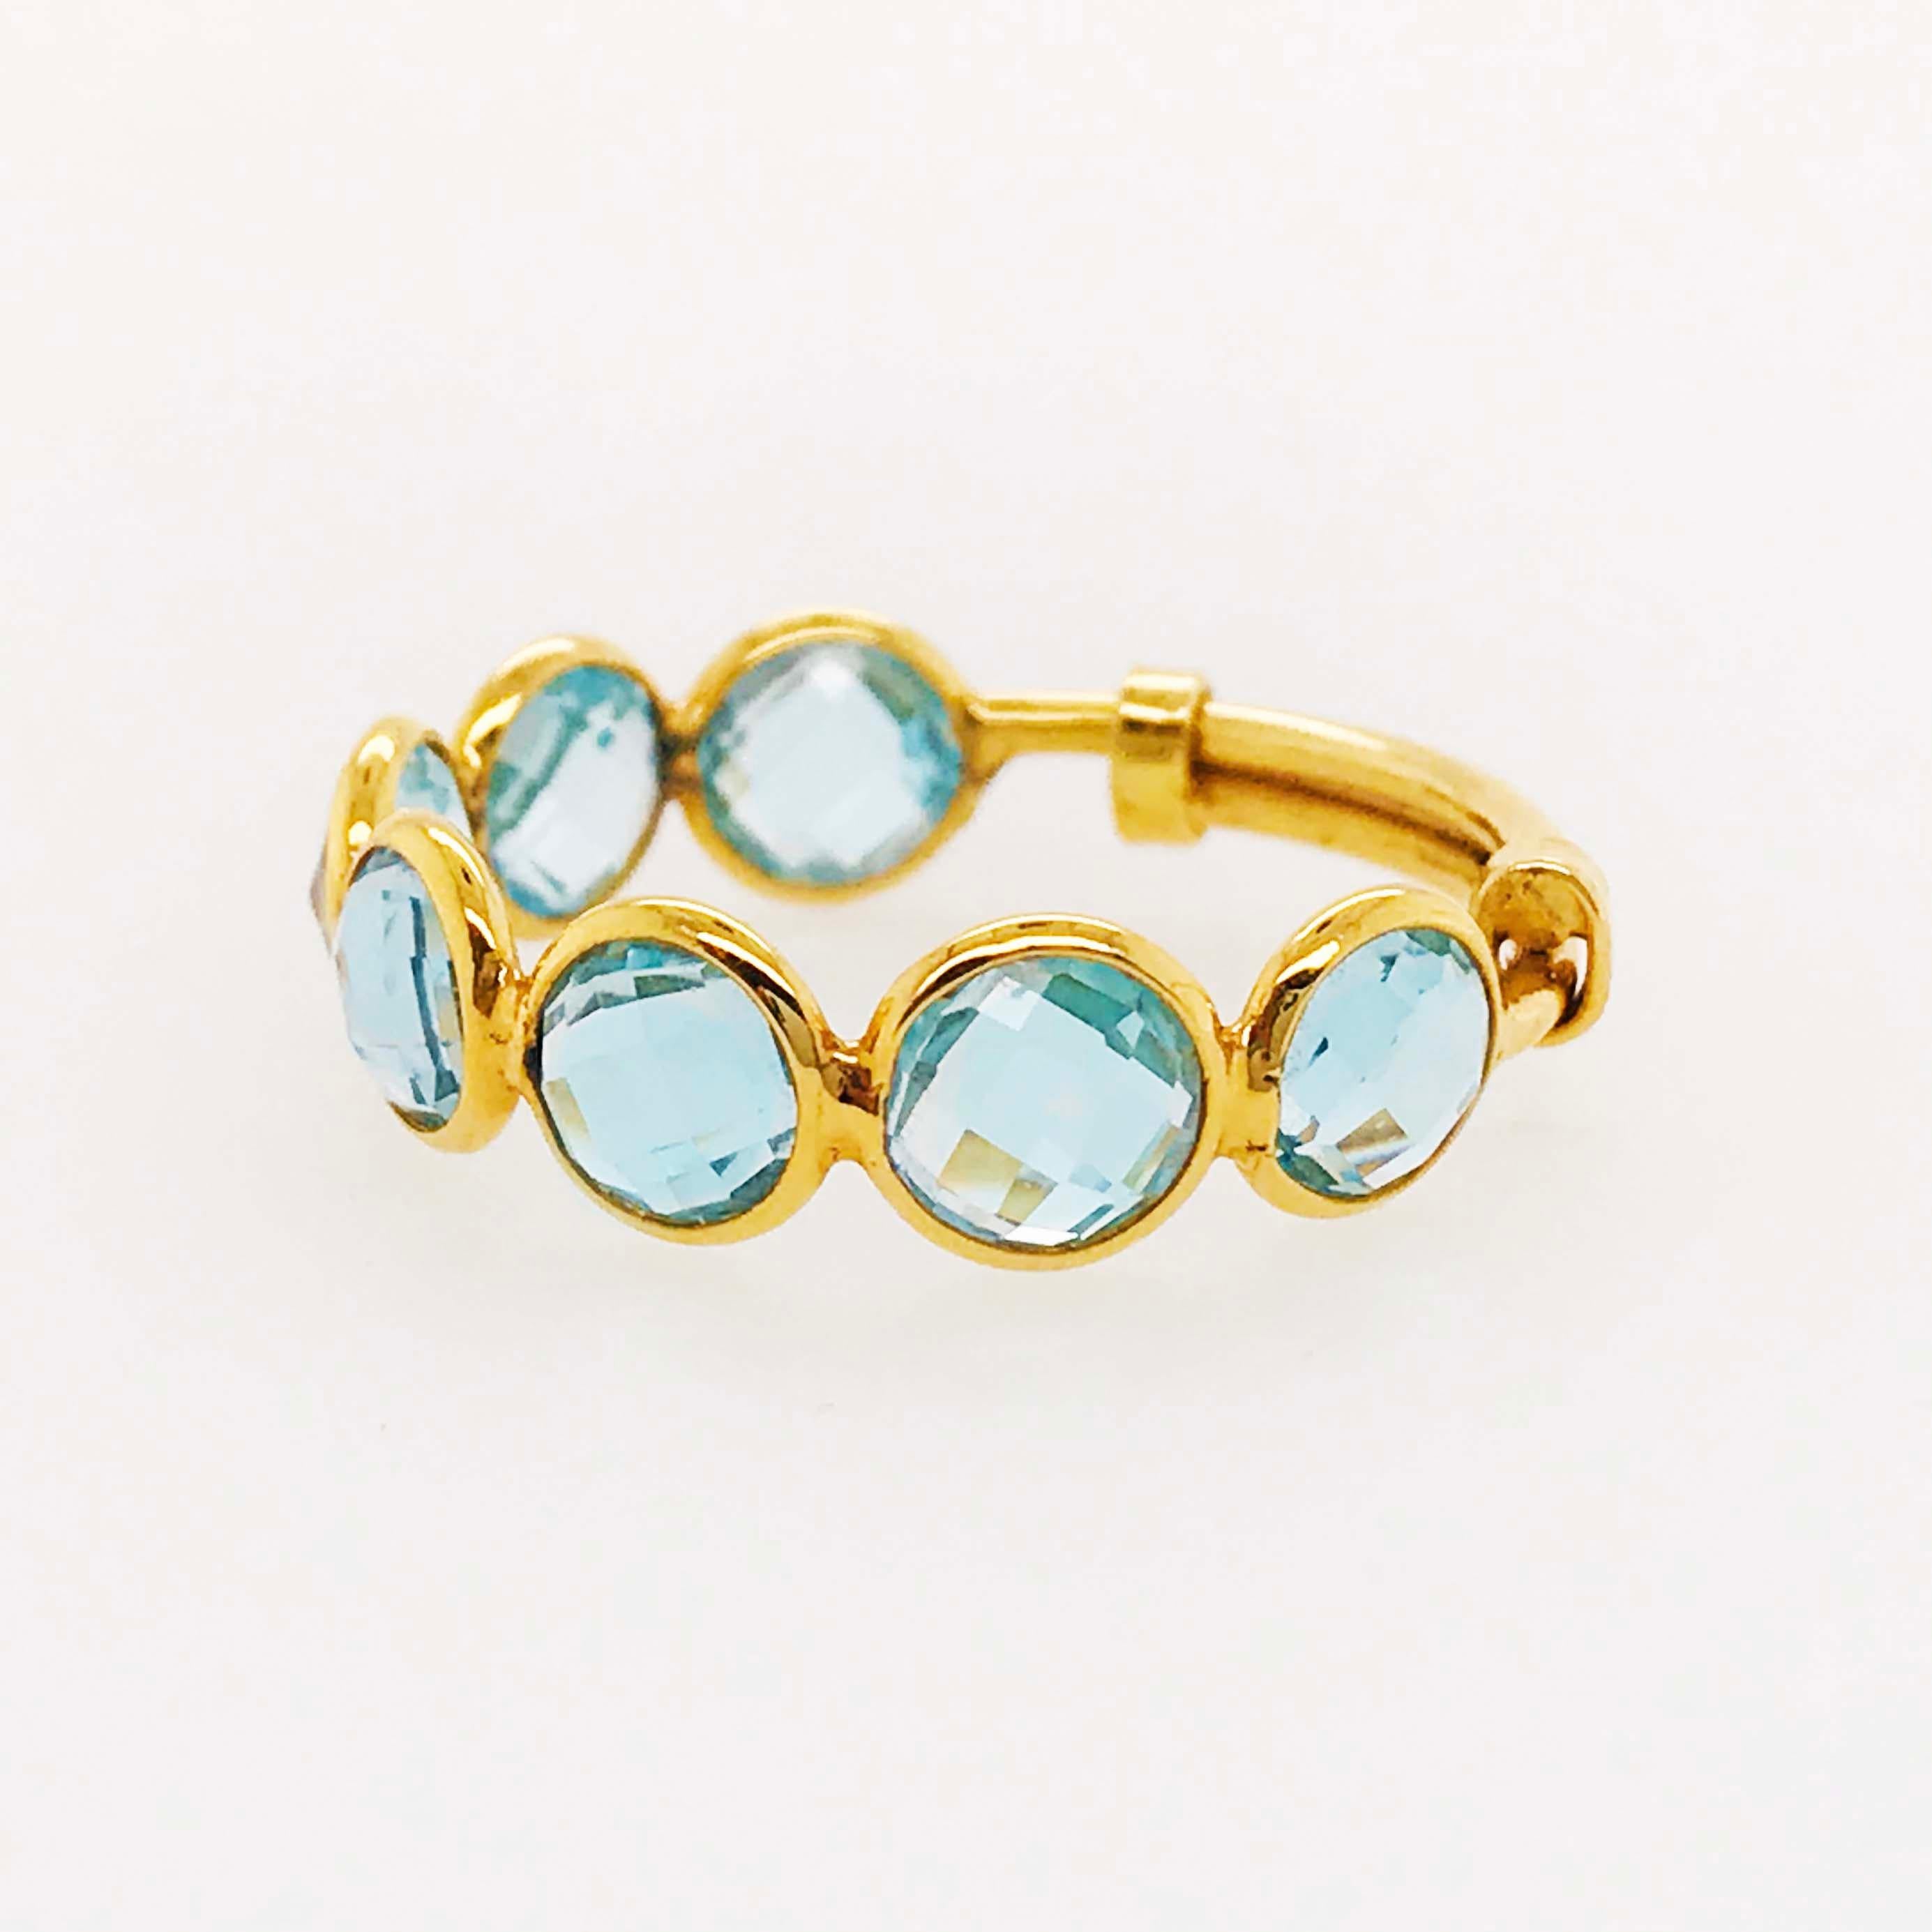 Artisan Blue Topaz Ring, Adjustable Ring in 18 Karat Gold 4 Carat Blue Topaz Gemstone